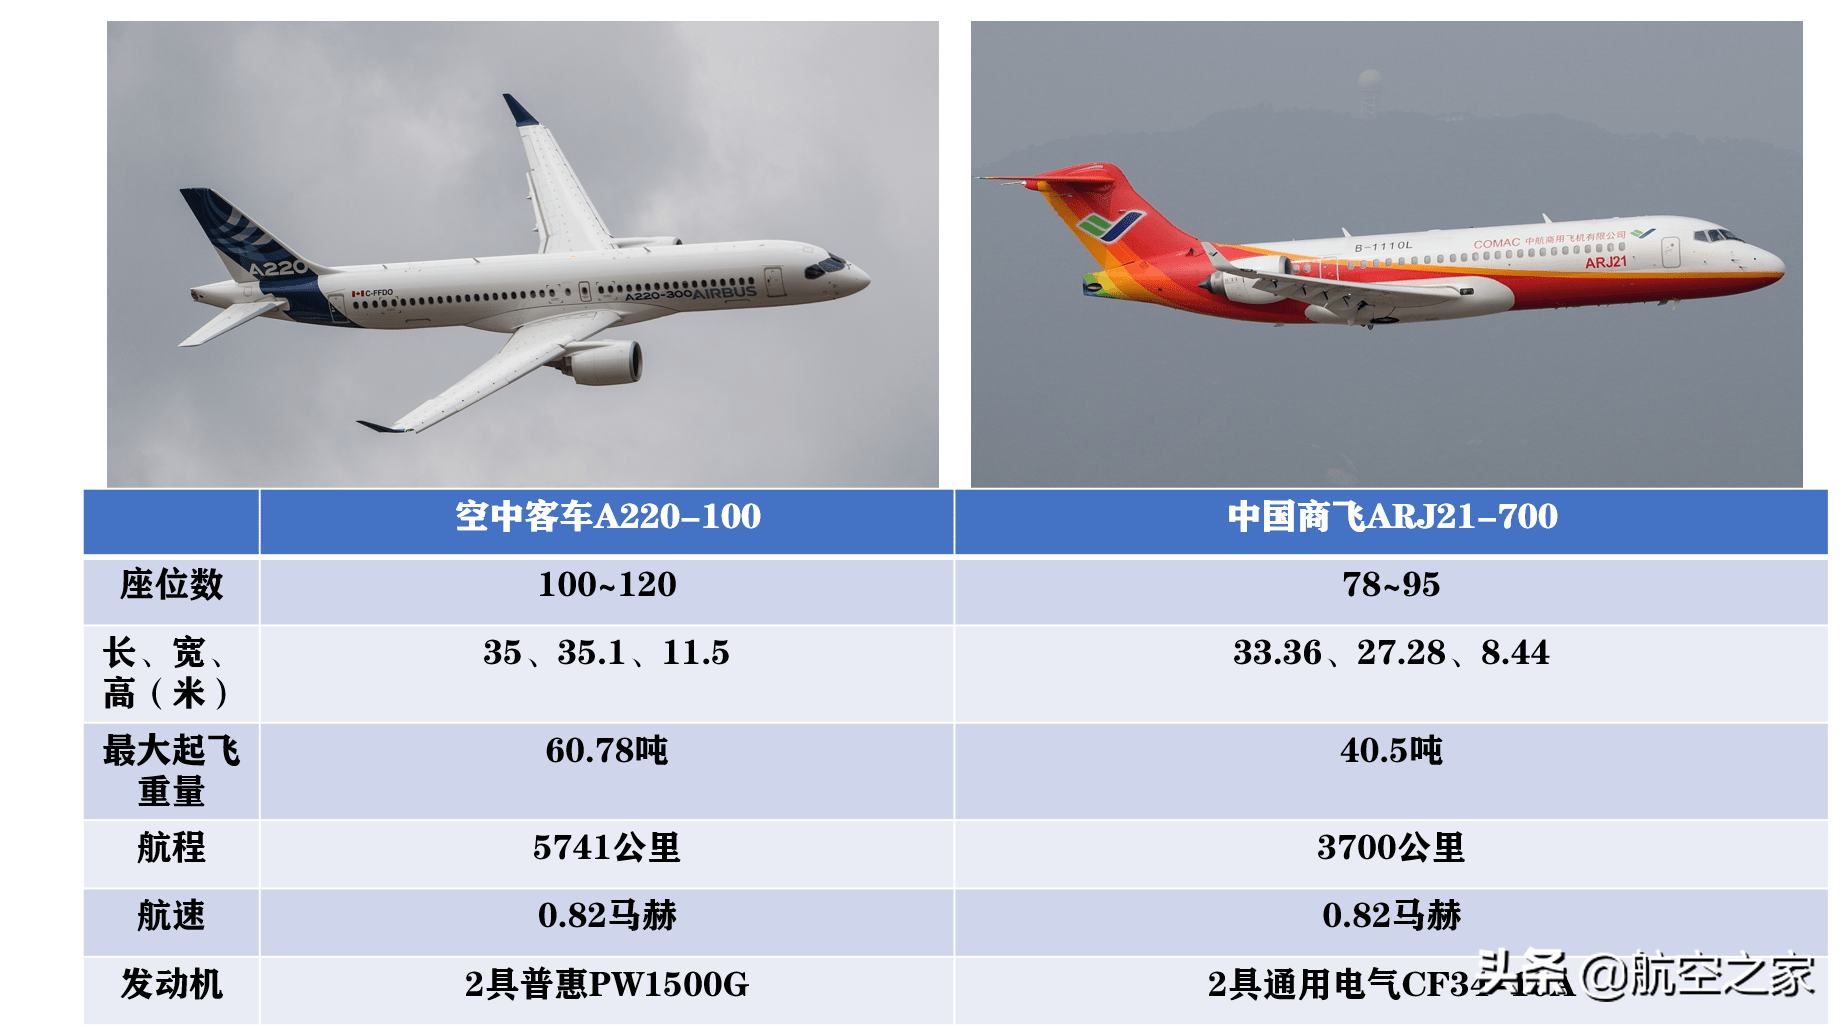 空客手握600架a220客机订单,试图进入中国市场,最大障碍是arj21